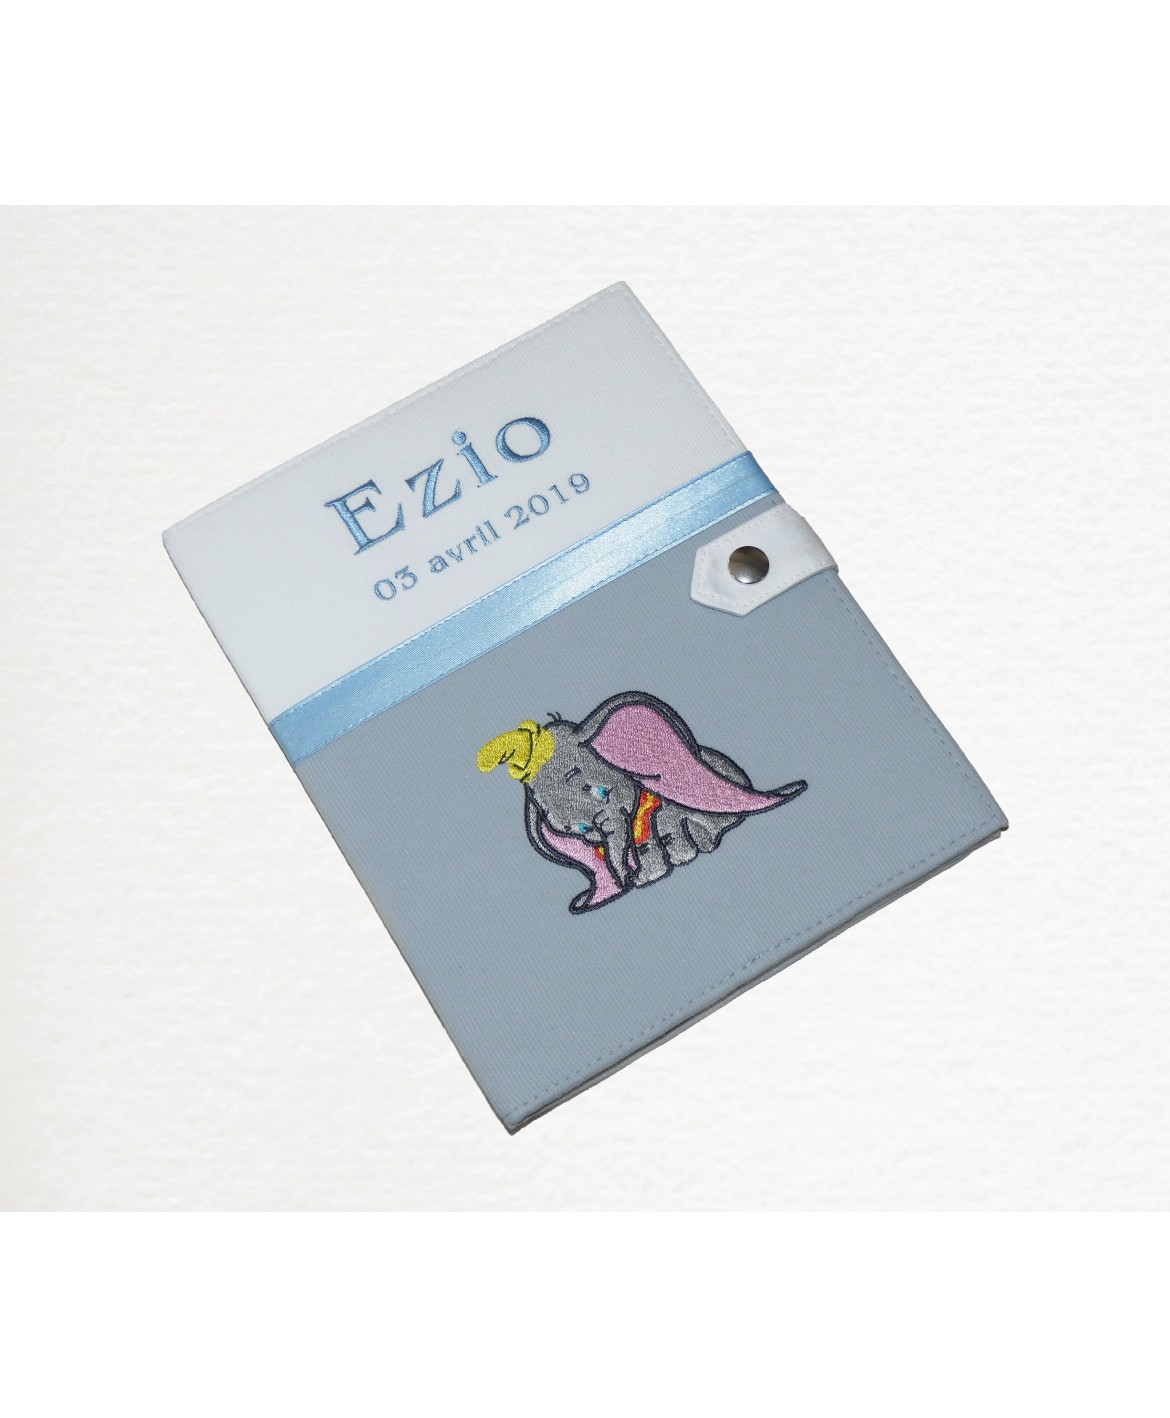 Protège carnet de santé rigide blanc et gris personnalisé - Eléphant Dumbo - Cadeau de naissance garçon